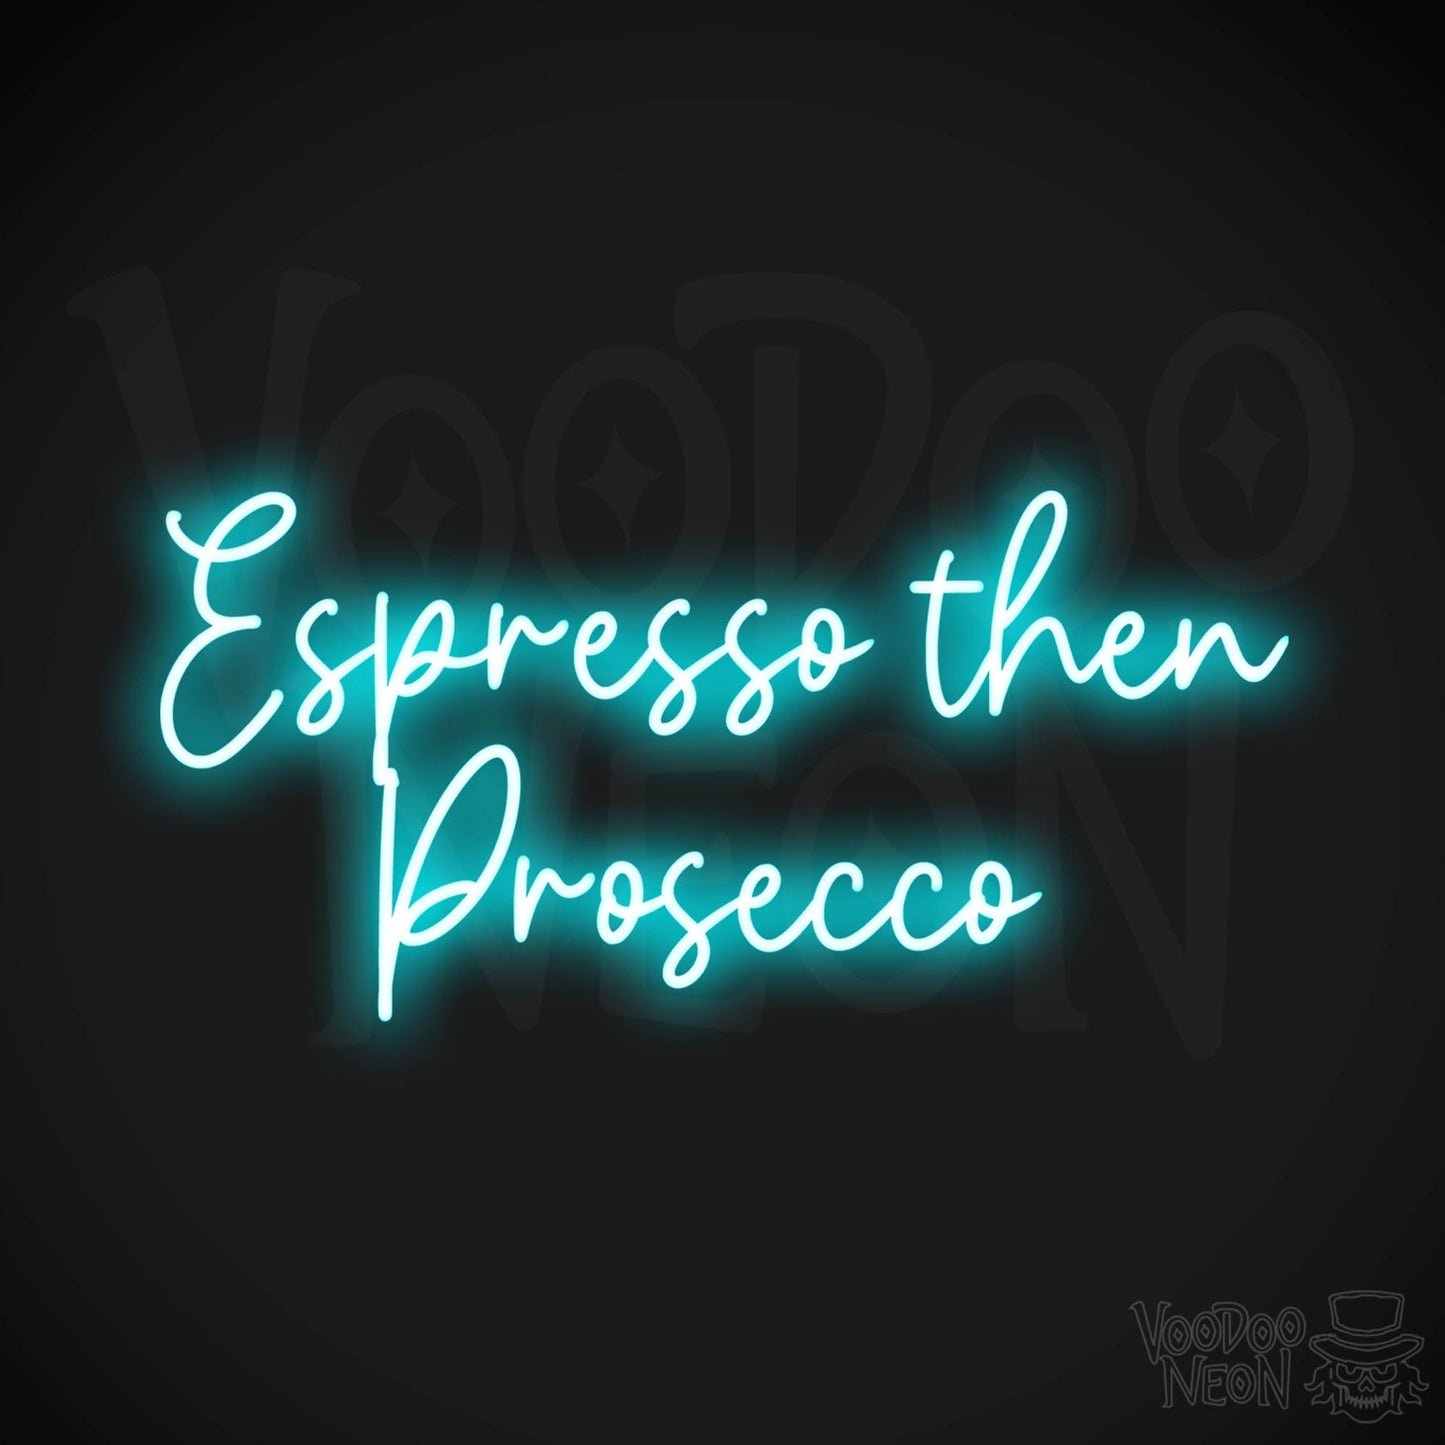 Espresso Then Prosecco LED Neon - Ice Blue